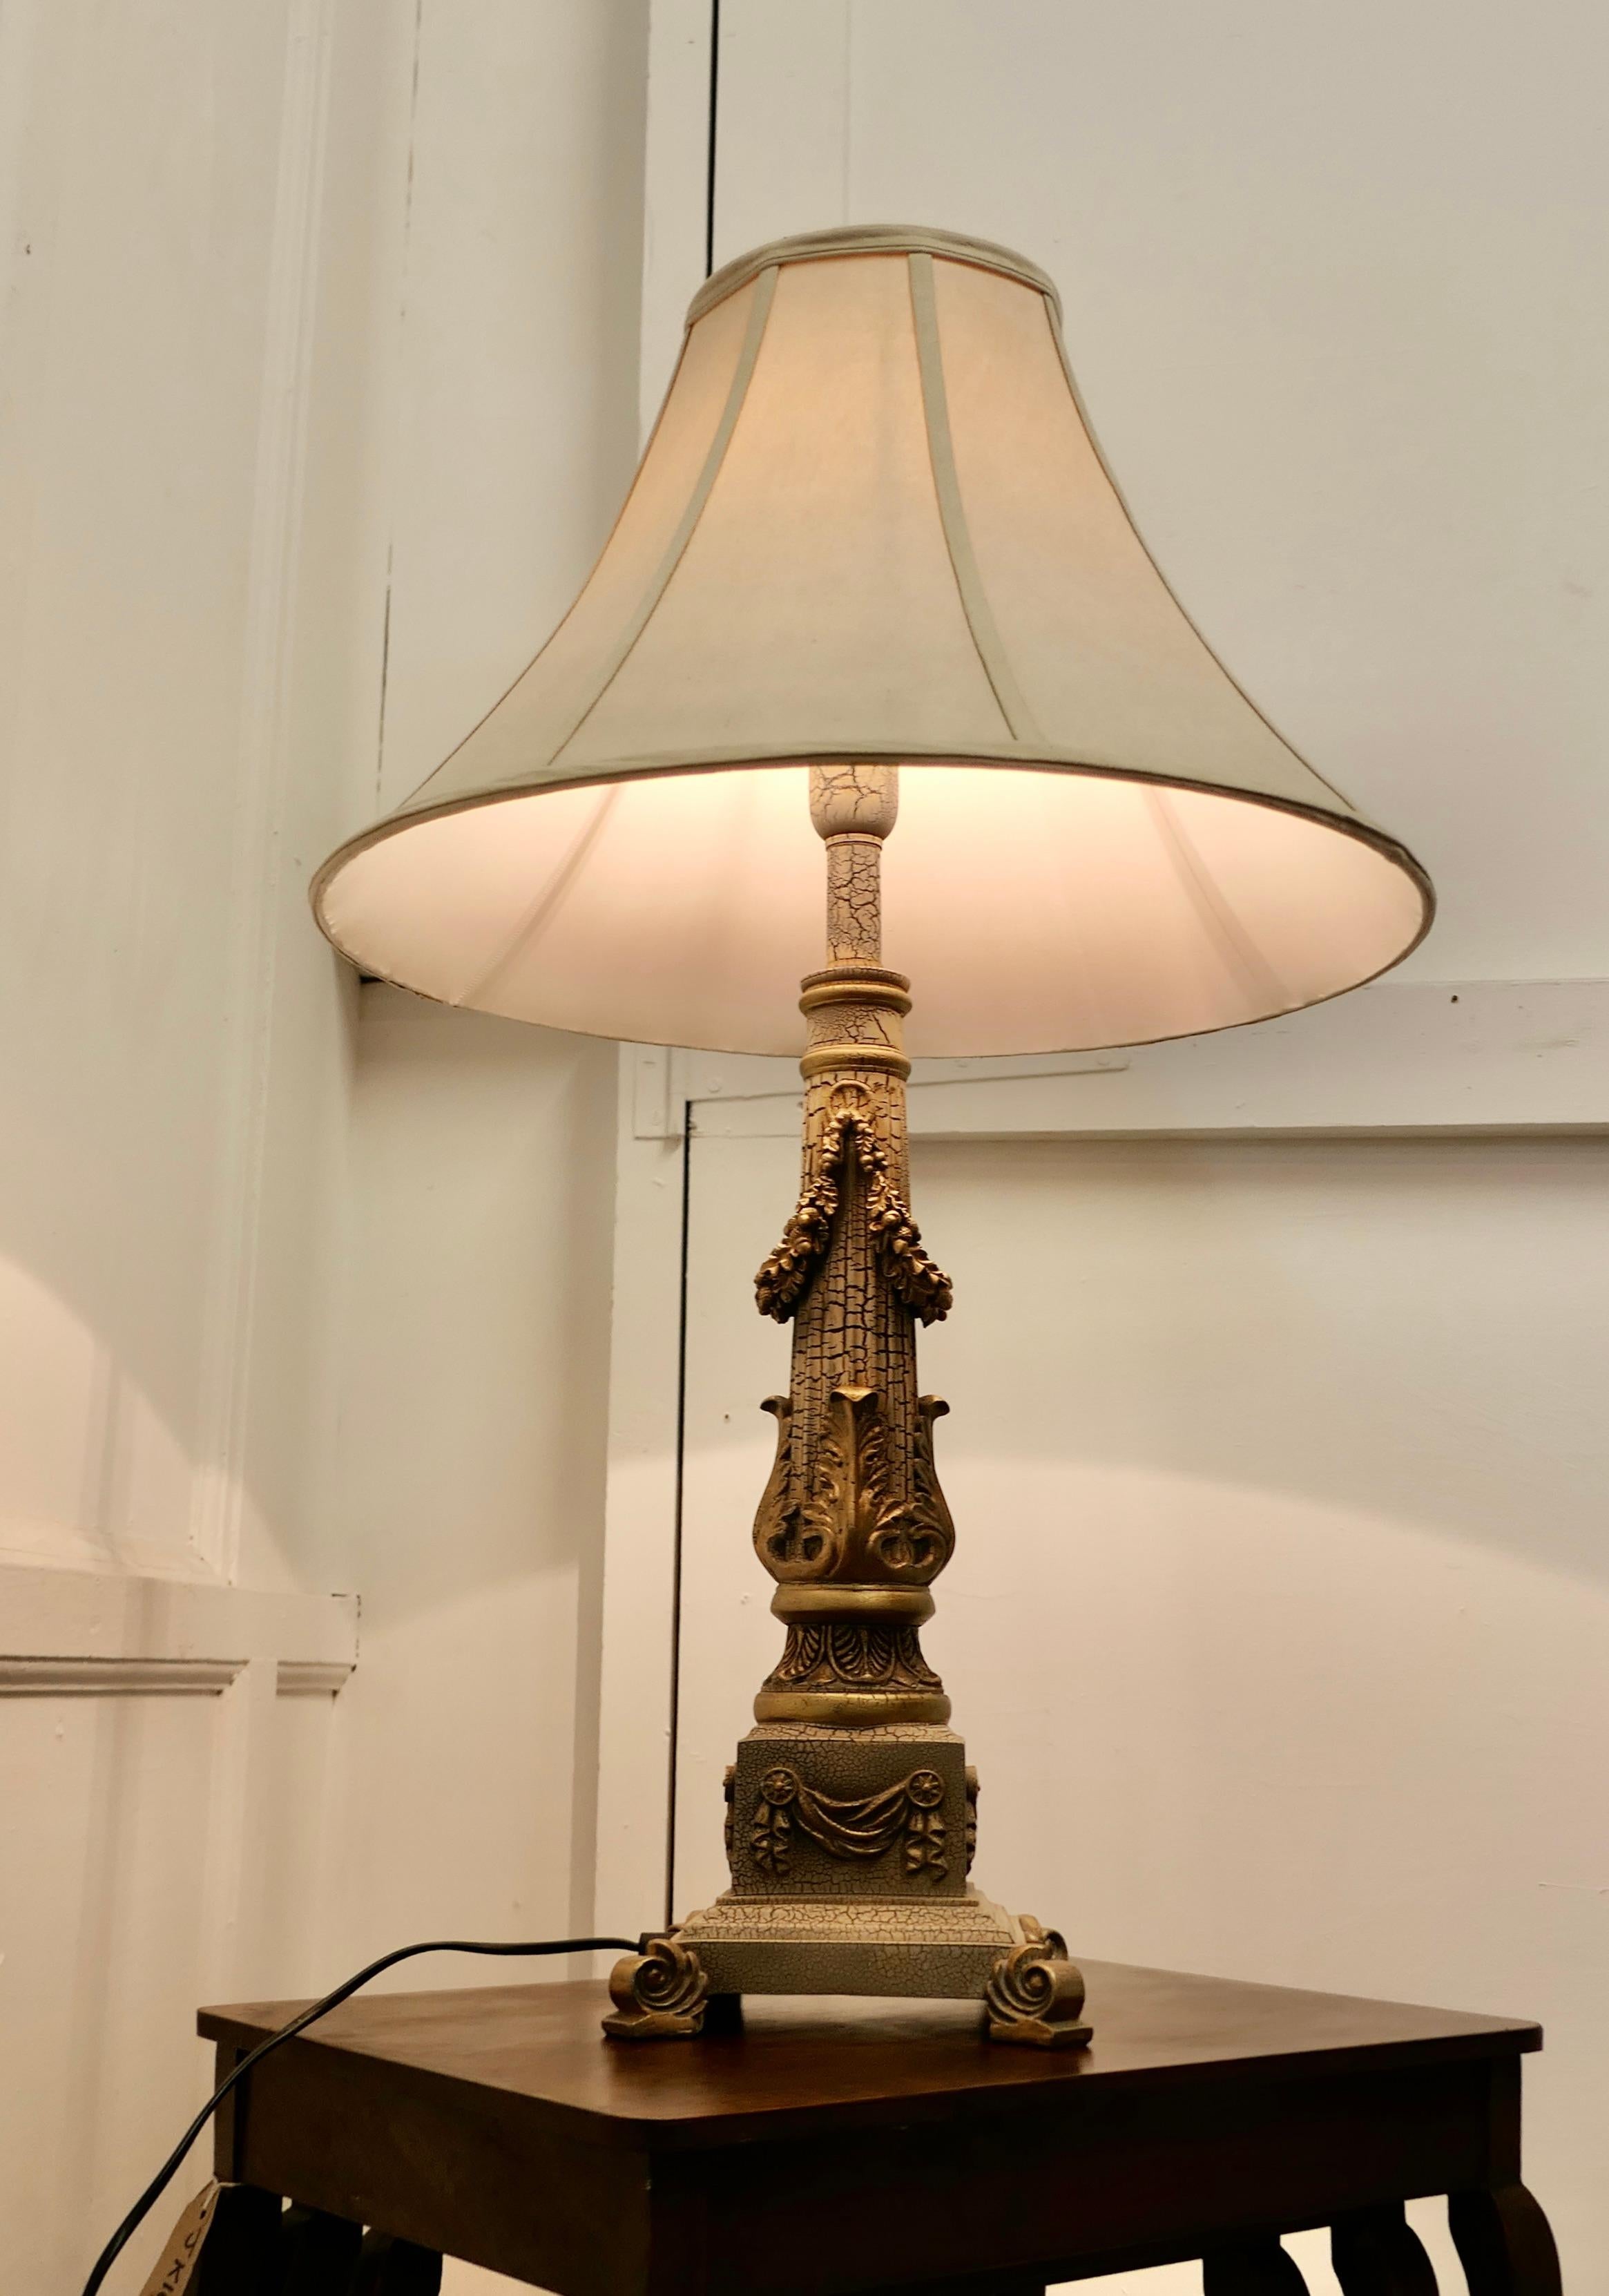 Lampe de table à colonne corinthienne

Il s'agit d'une pièce très attrayante, la colonne est décorée de guirlandes et de feuilles d'acanthe et repose sur une base en gradins et à volutes, la lampe a une finition patinée craquelée qui ressemble à